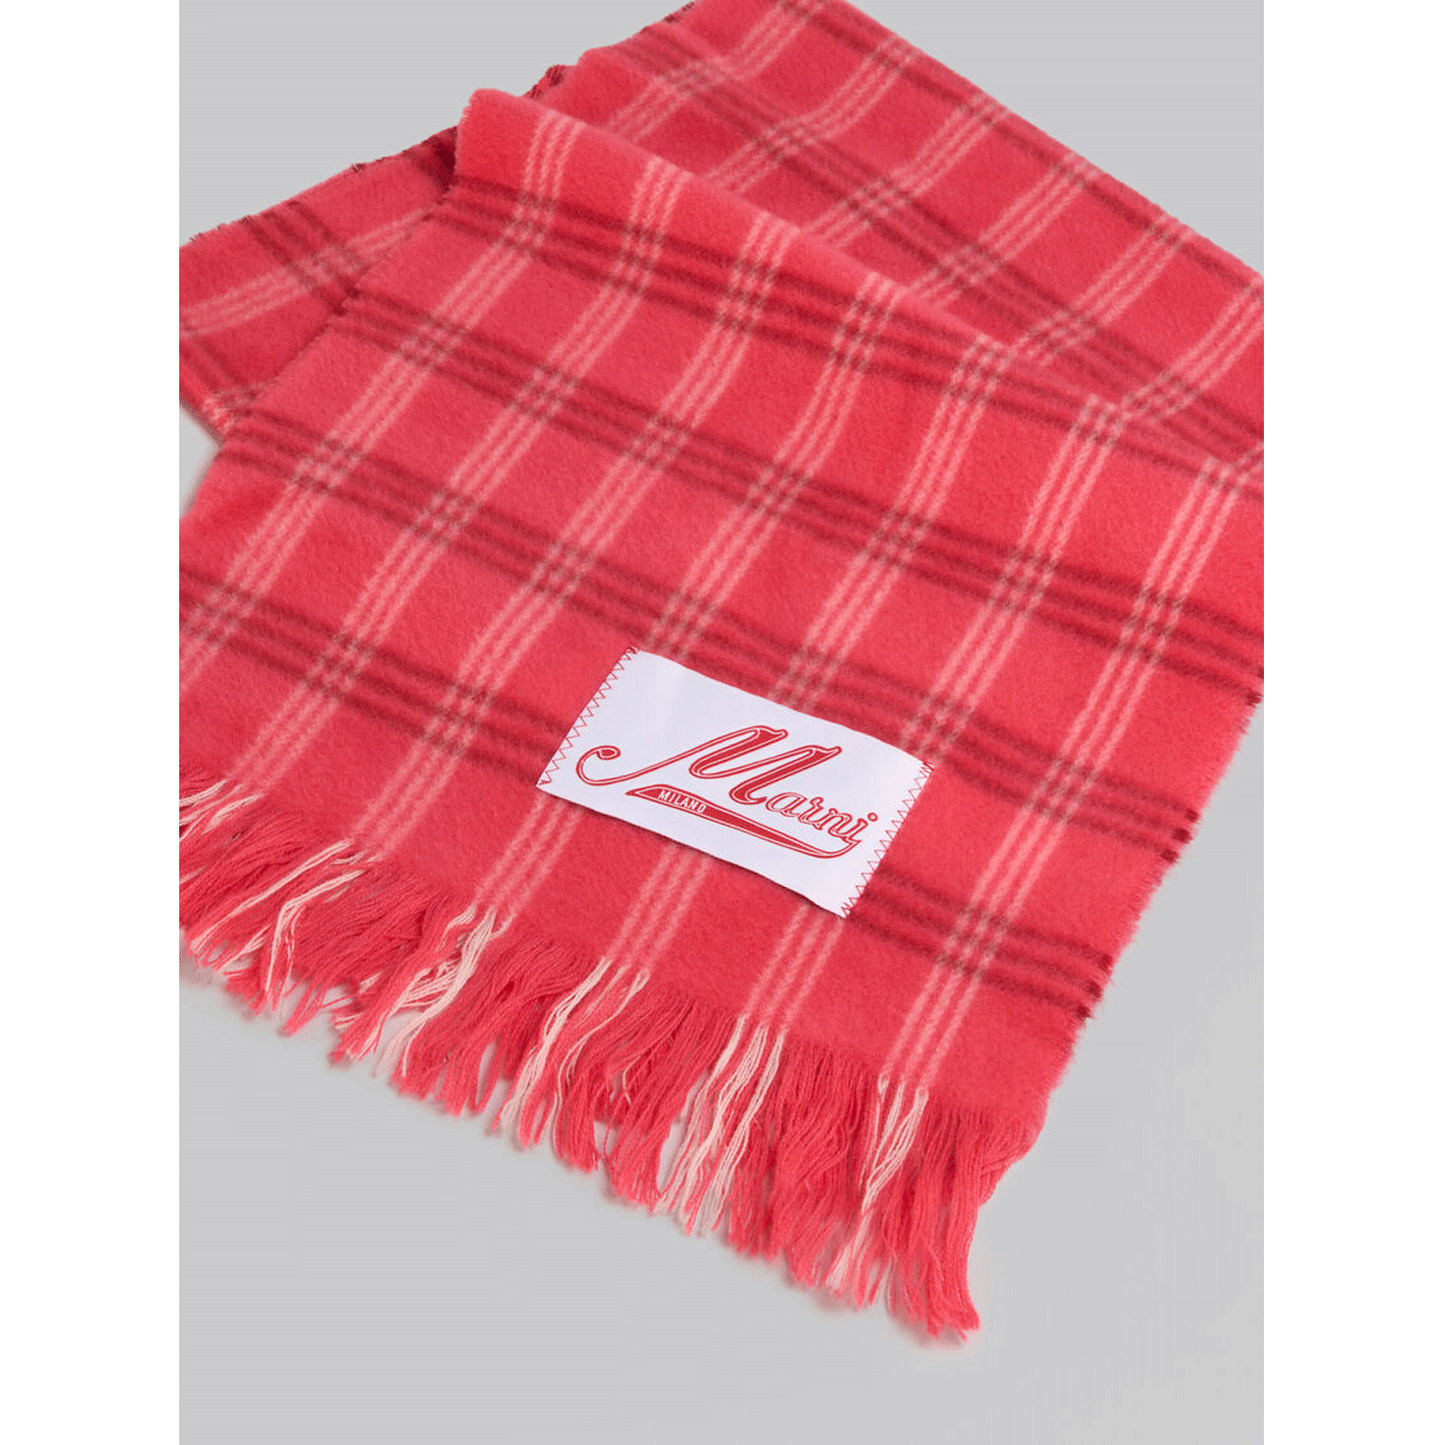 
                  
                    【MARNI】ローズピンク チェック ウール製スカーフ
                  
                